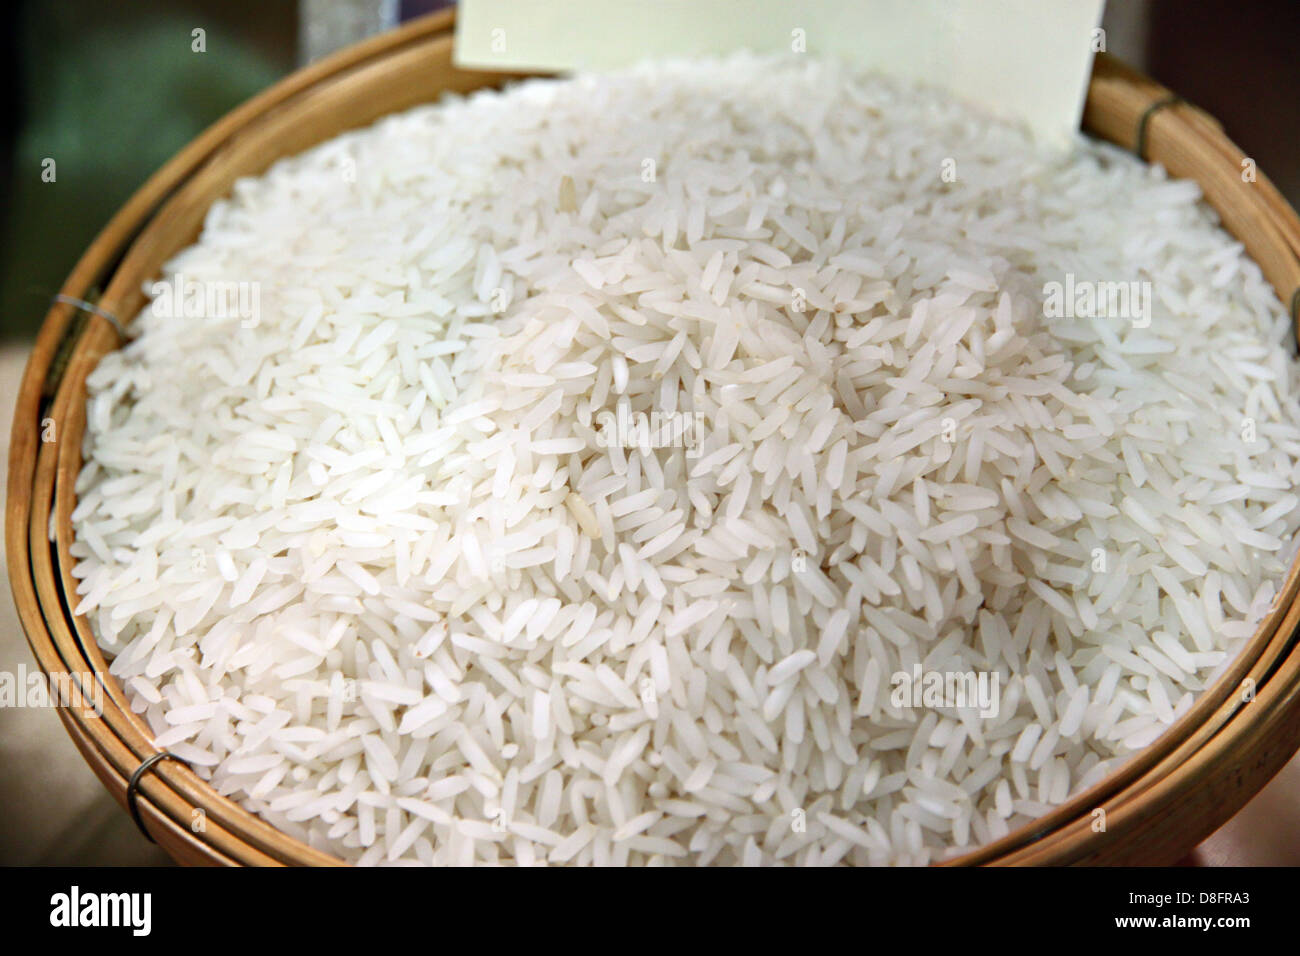 La grana di riso nel contenitore.Il riso è di colore bianco. Foto Stock